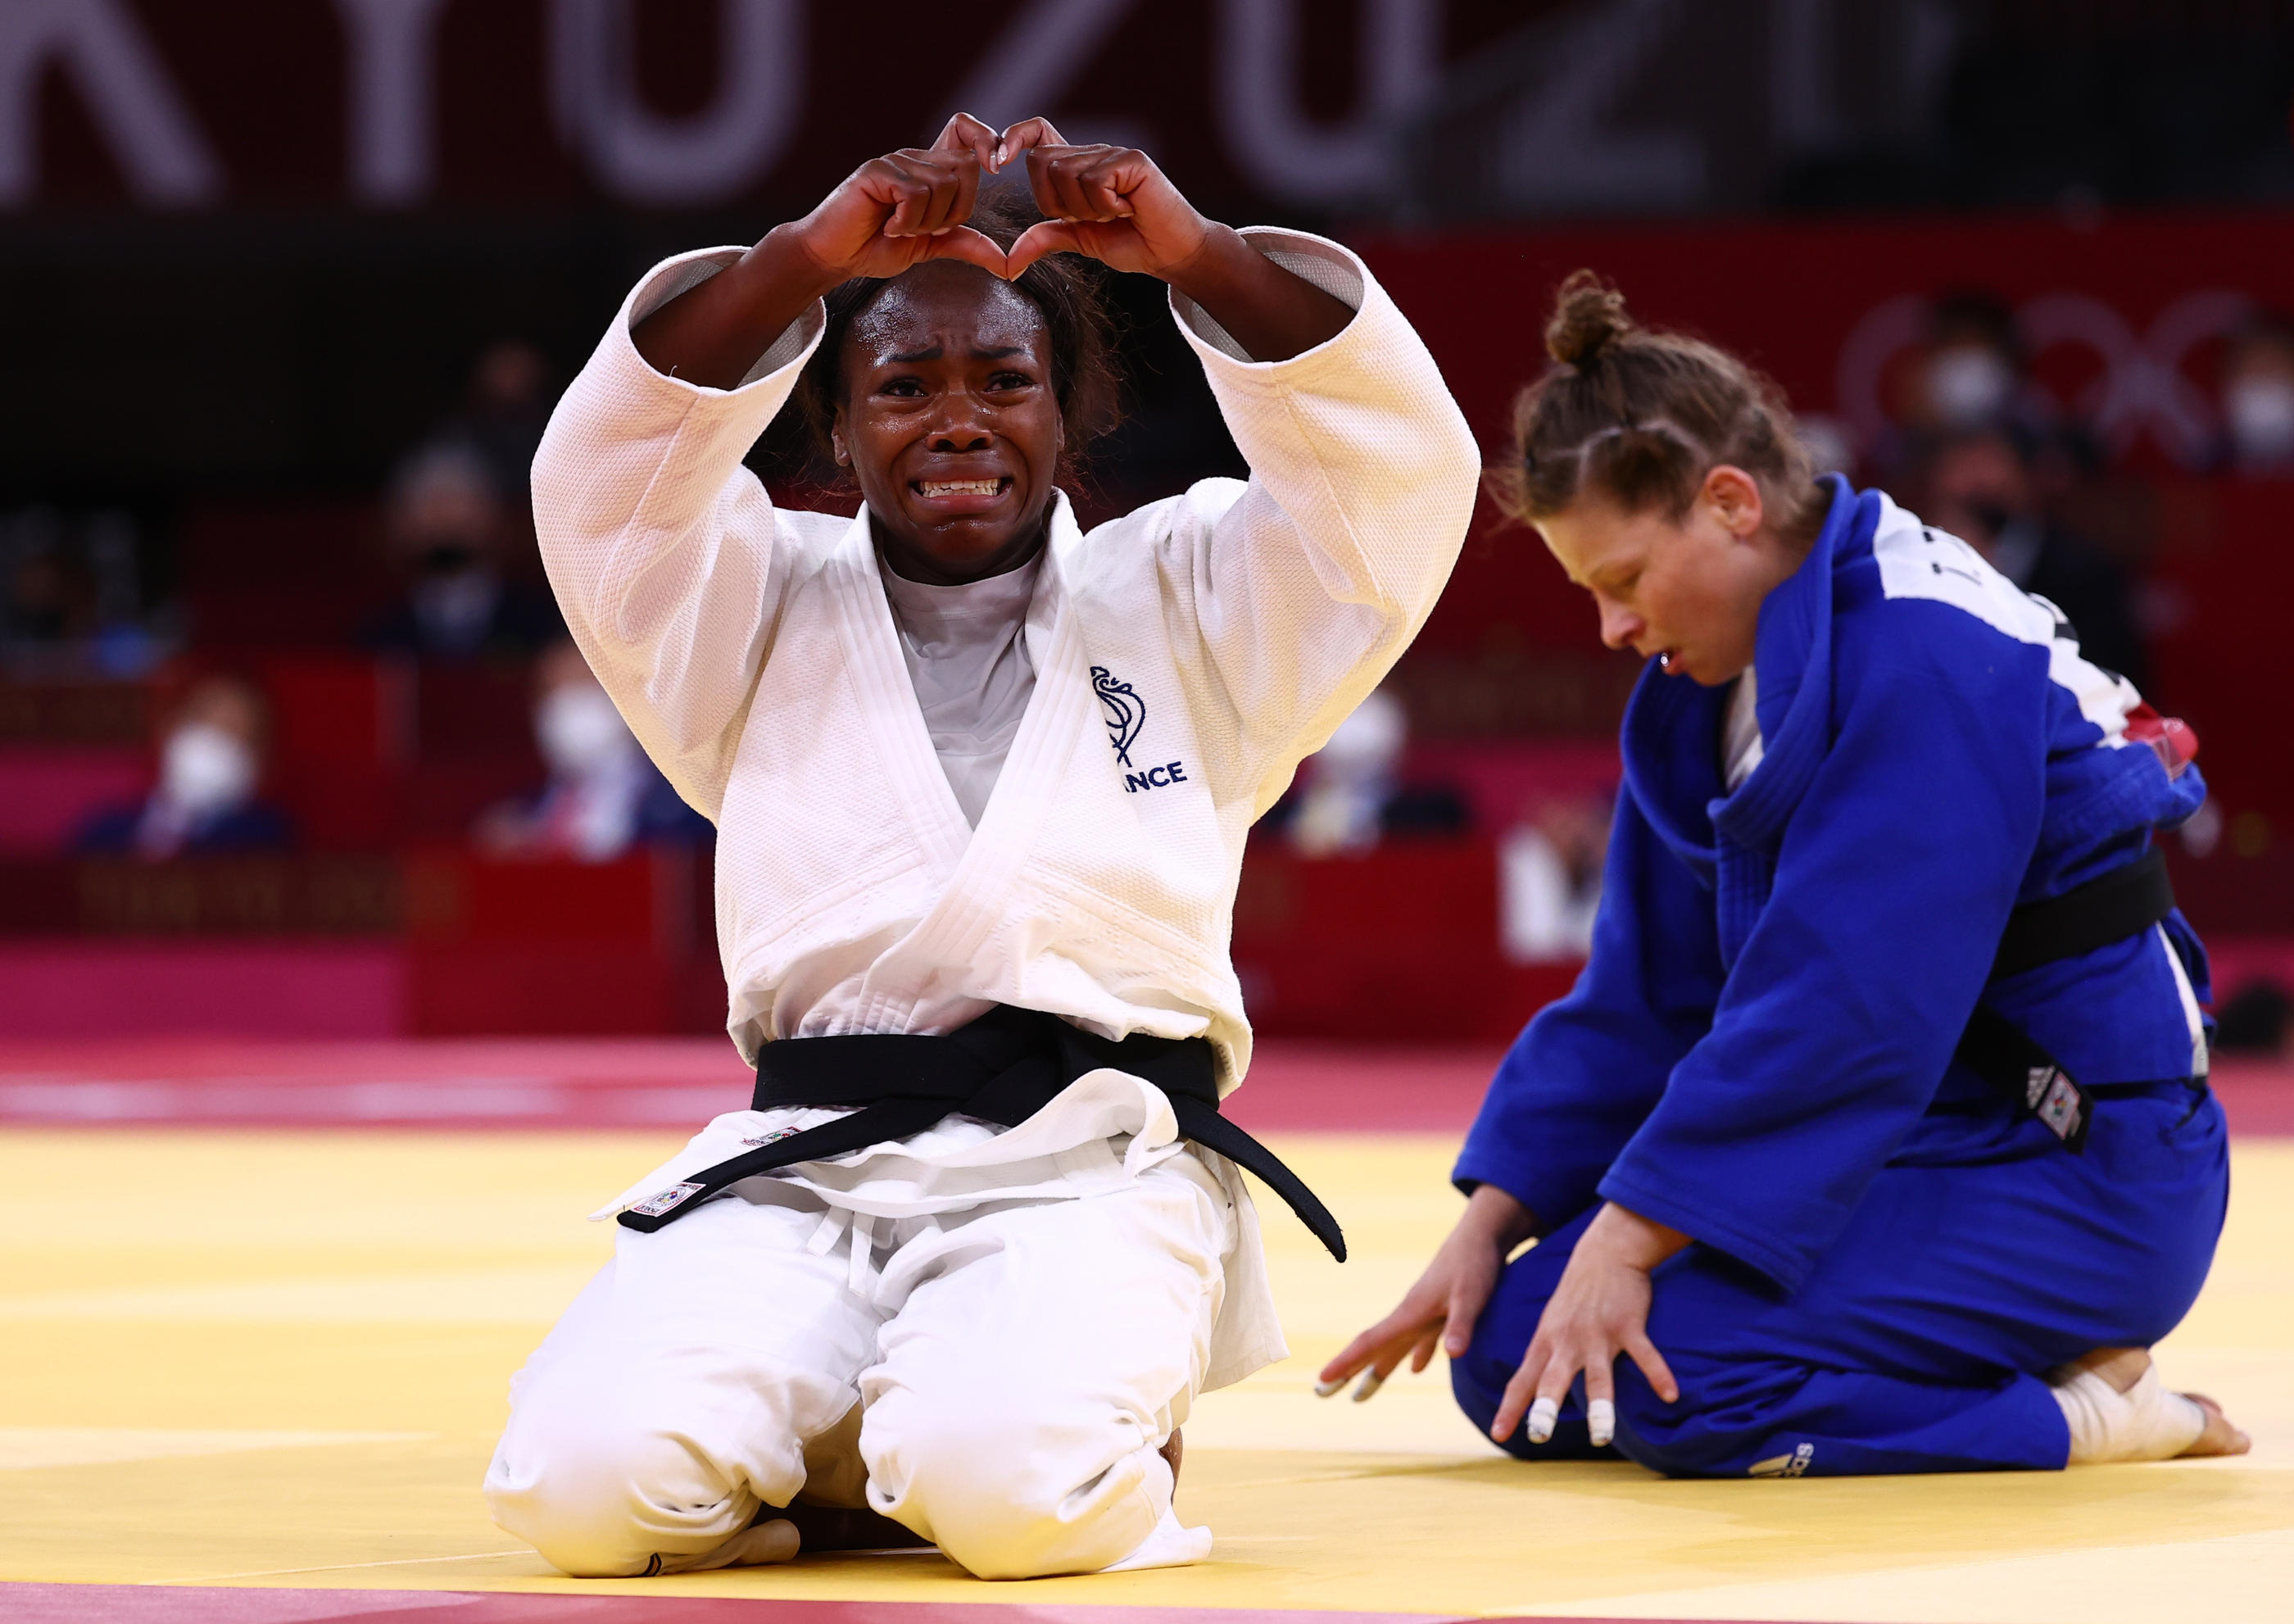 Clarisse Agbegnenou célèbre sa victoire sur Tina Trstenjak en finale des -63 kg des Jeux olympiques. REUTERS/Sergio Perez